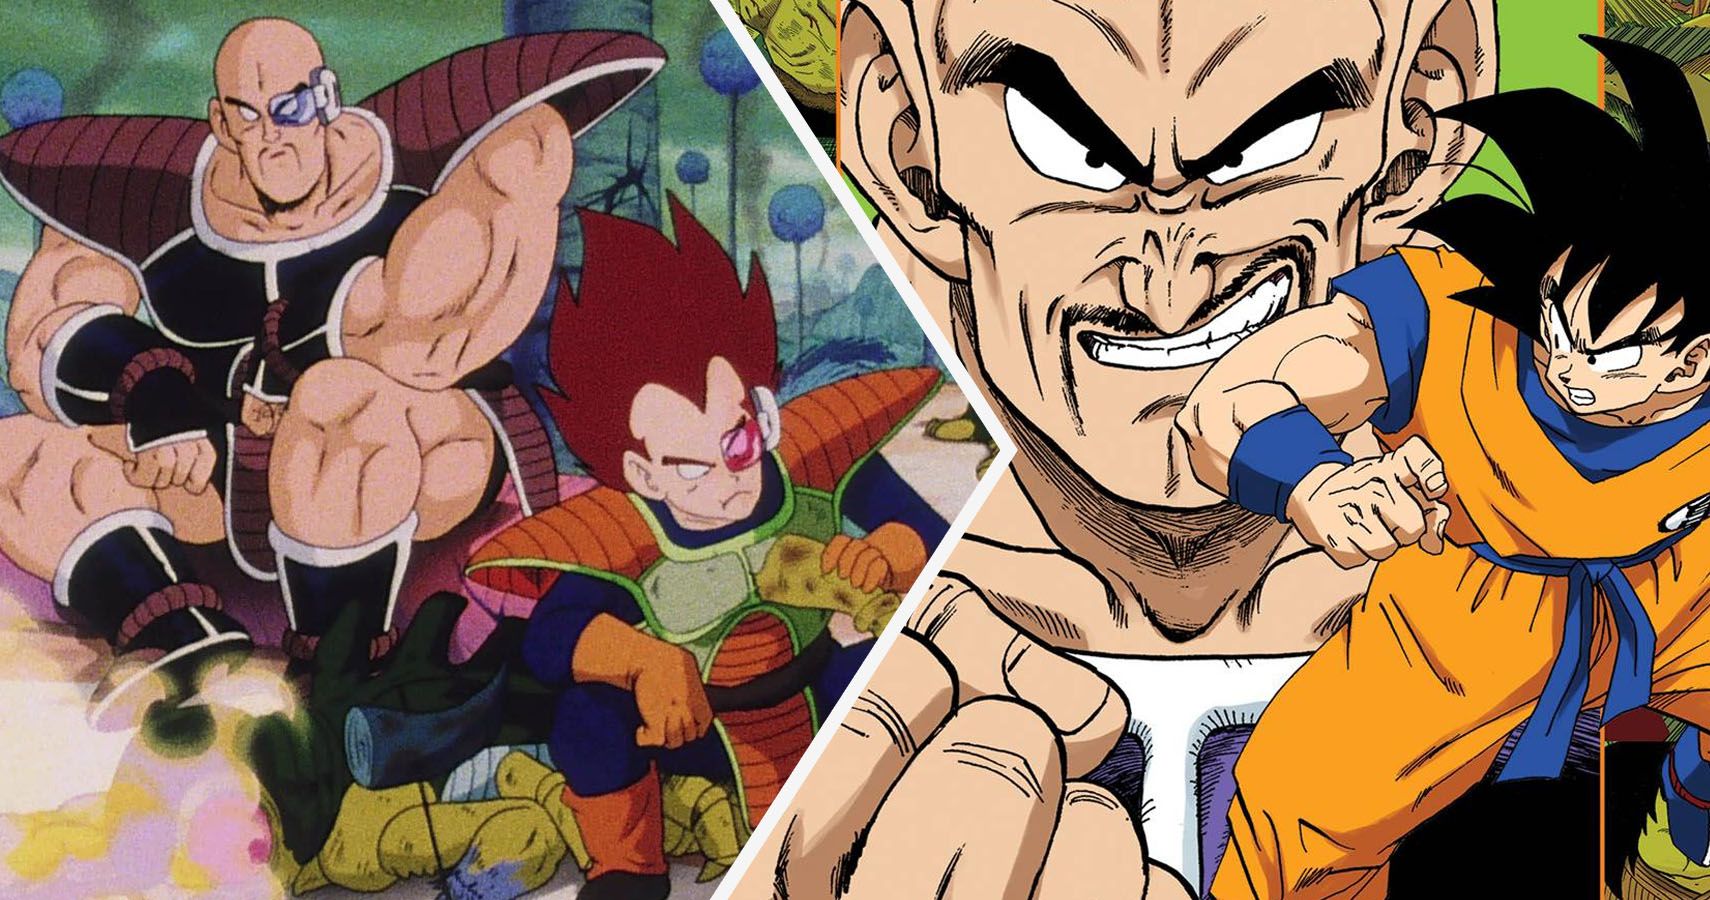 Nappa, Vegeta, and Goku from Dragon Ball Z